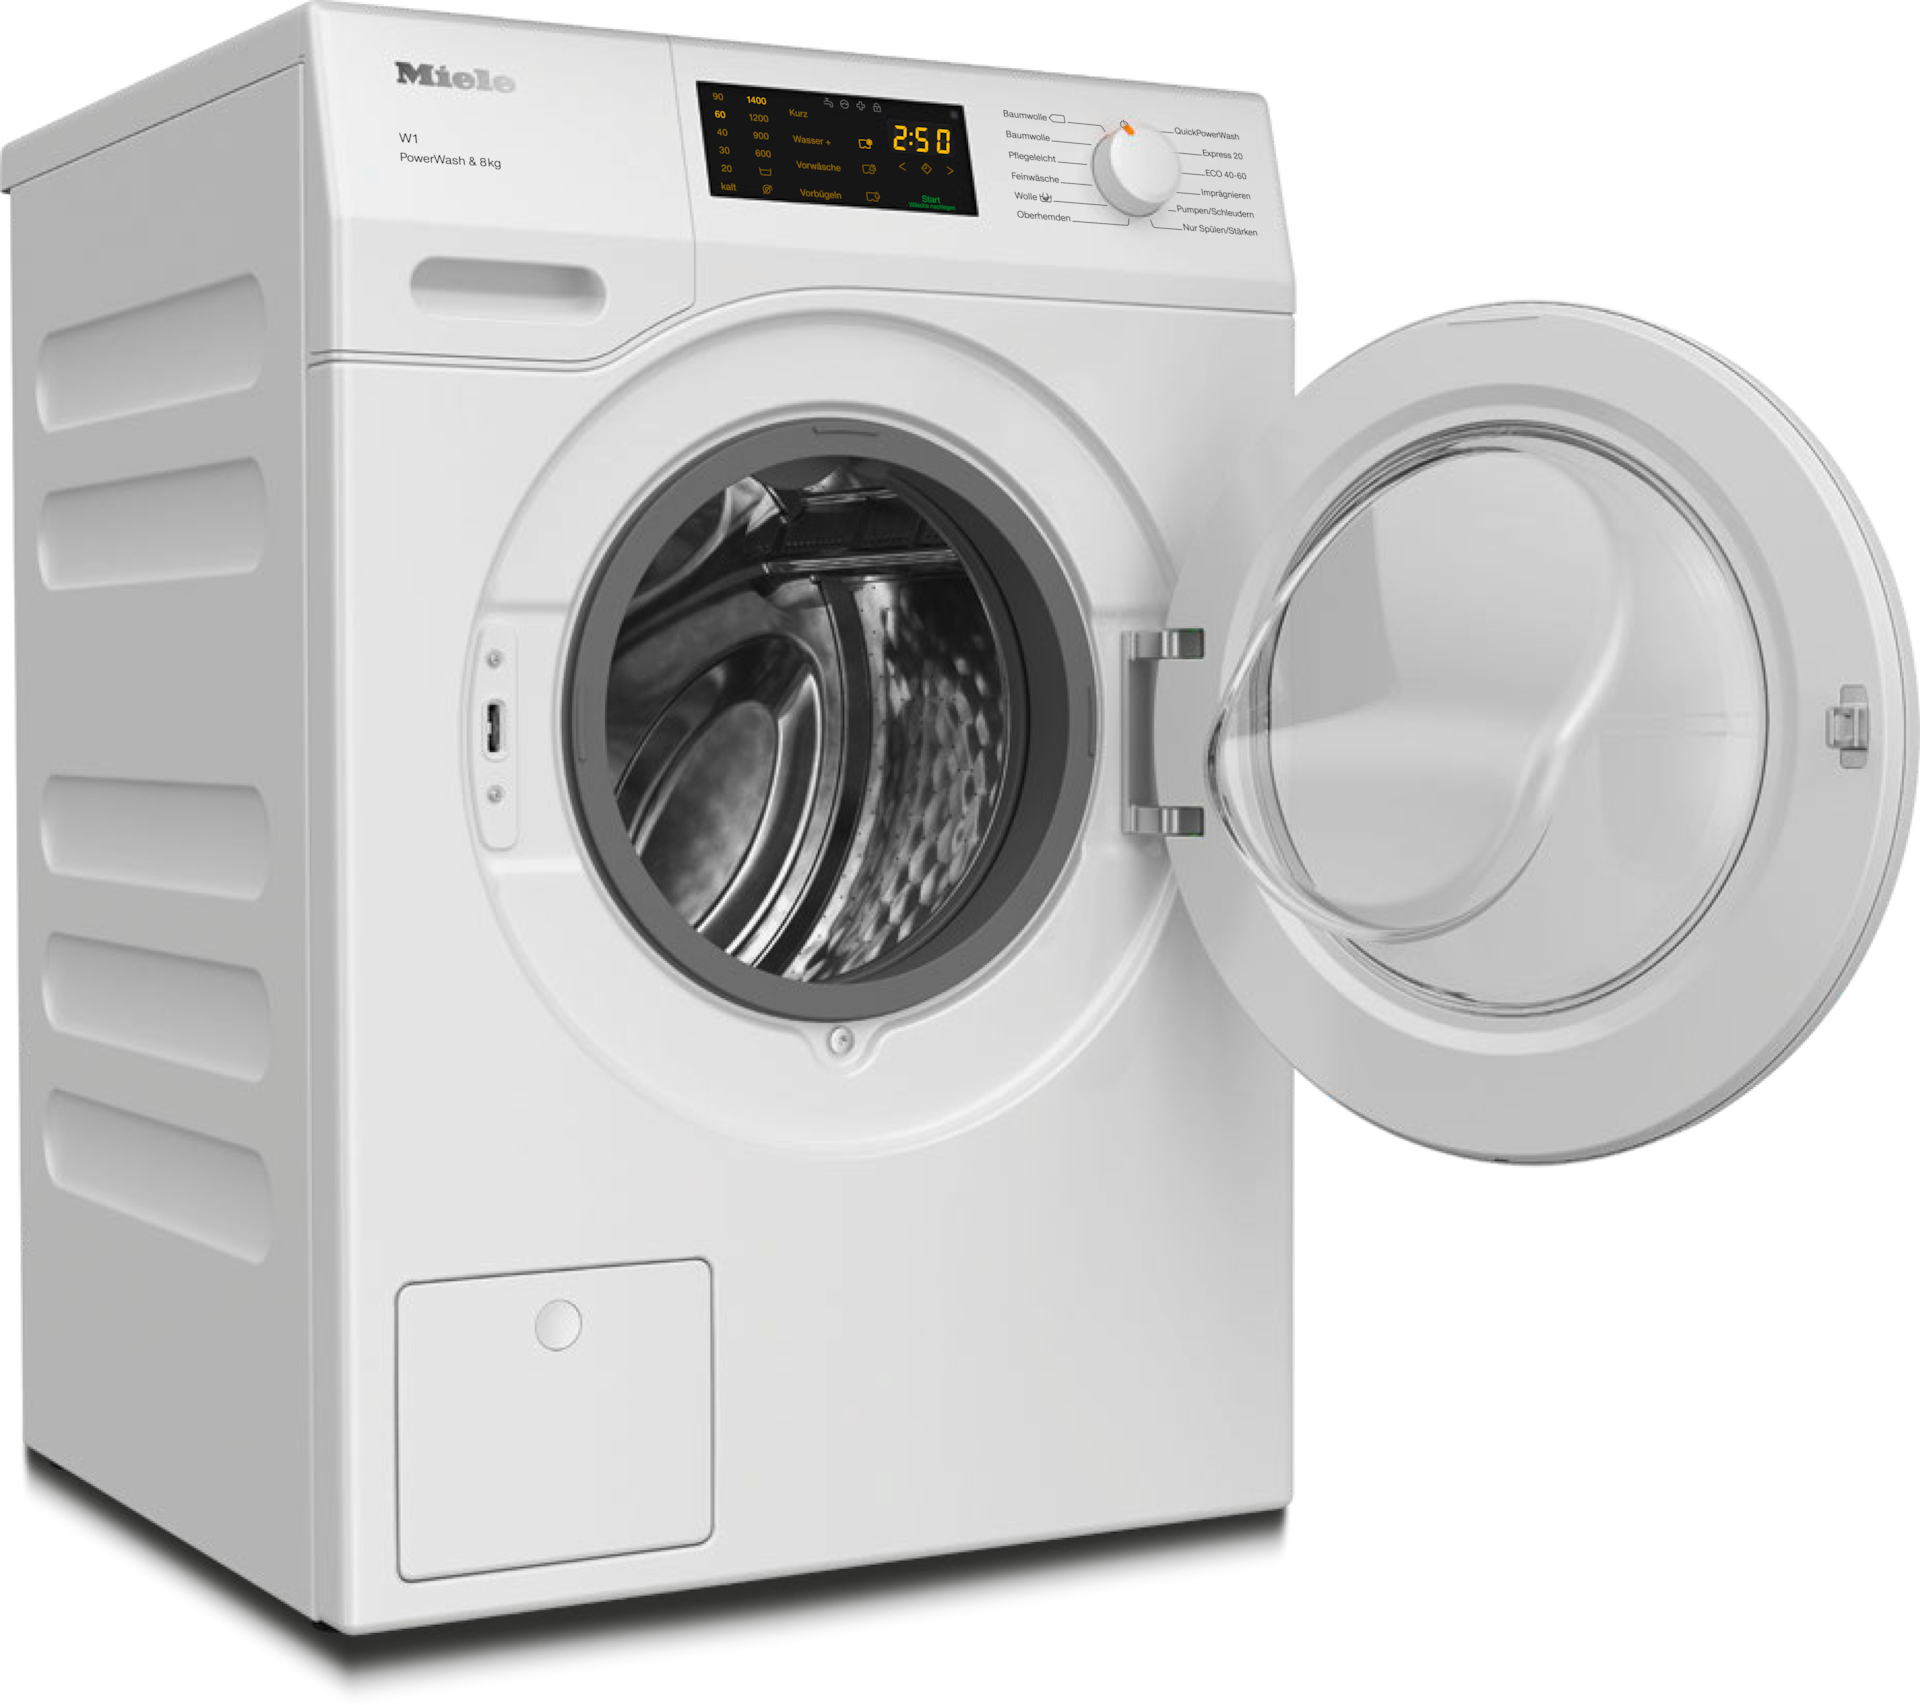 Waschmaschinen - WCD330 WPS PWash&8kg Lotosweiß - 2